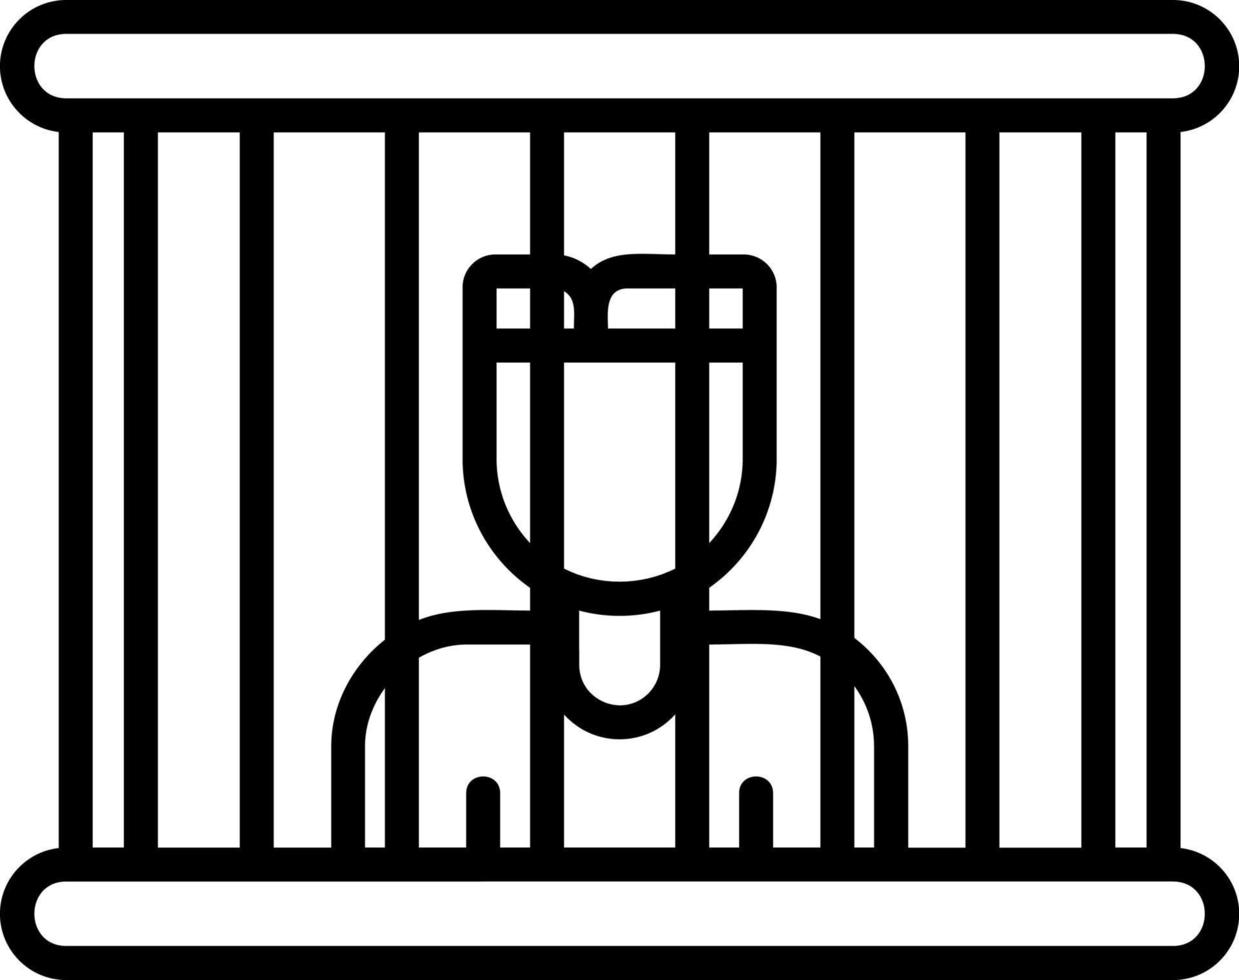 Prisoner Vector Icon Design